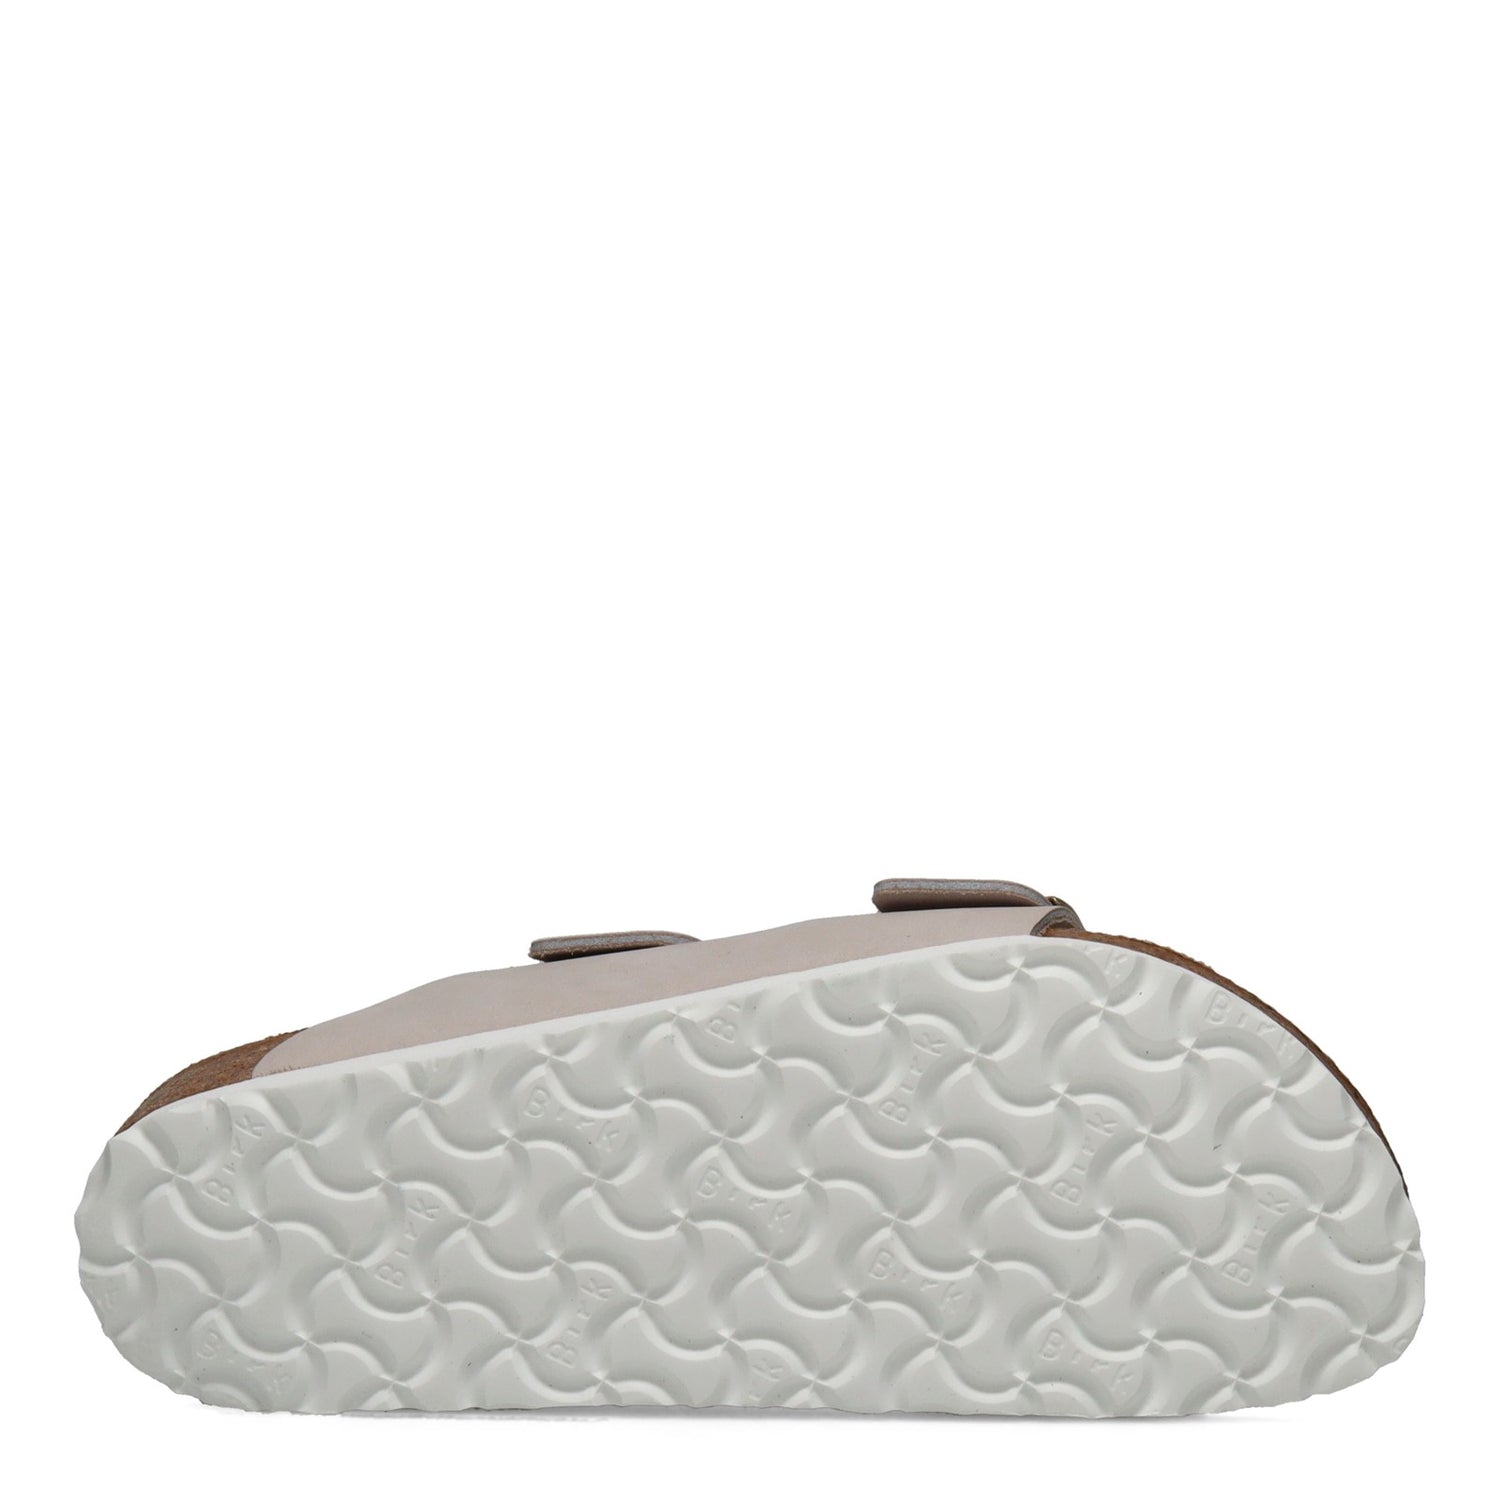 Peltz Shoes  Women's Birkenstock Arizona Soft Footbed Sandal - Narrow Width GREY SUEDE 1020 973 N